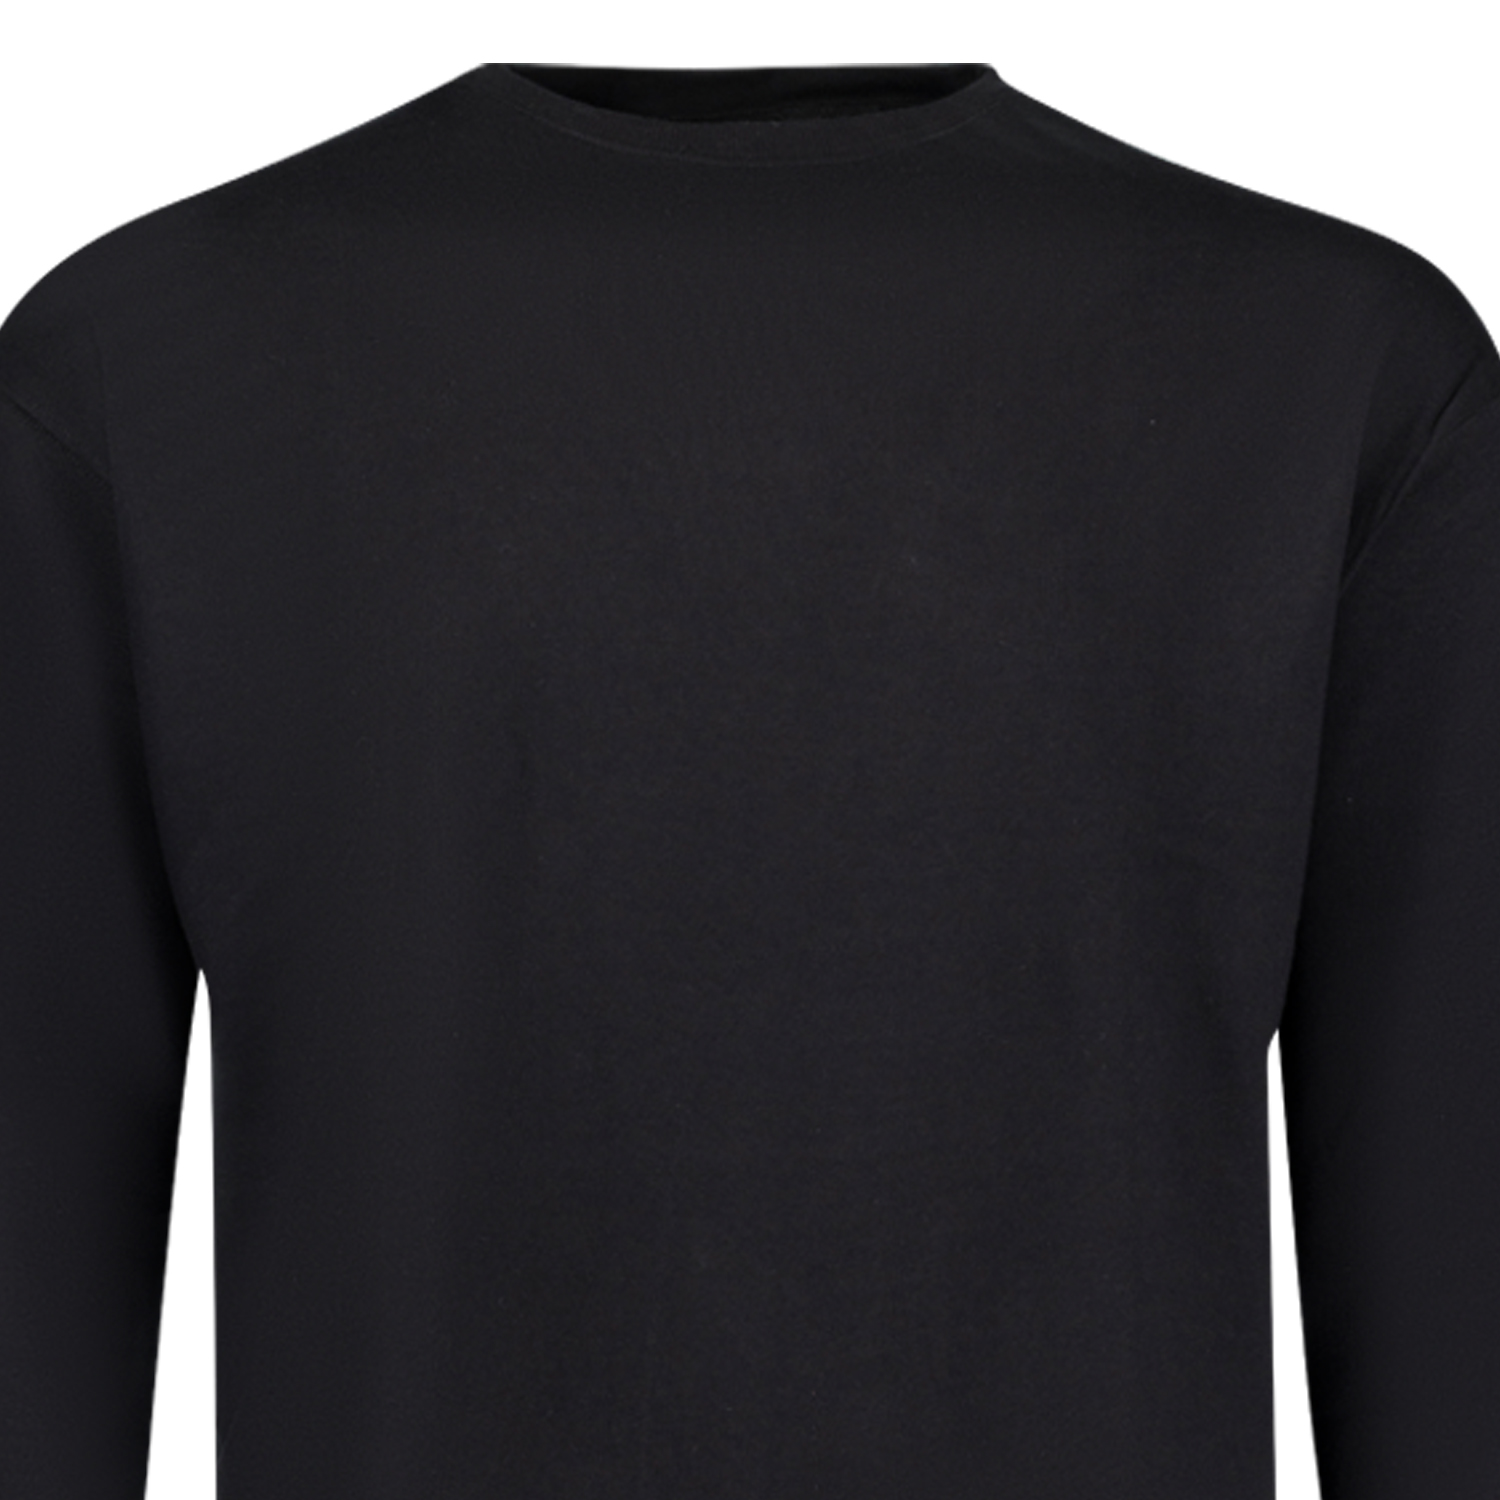 Sweatshirt ATHEN in Übergrößen schwarz by ADAMO bis 14XL